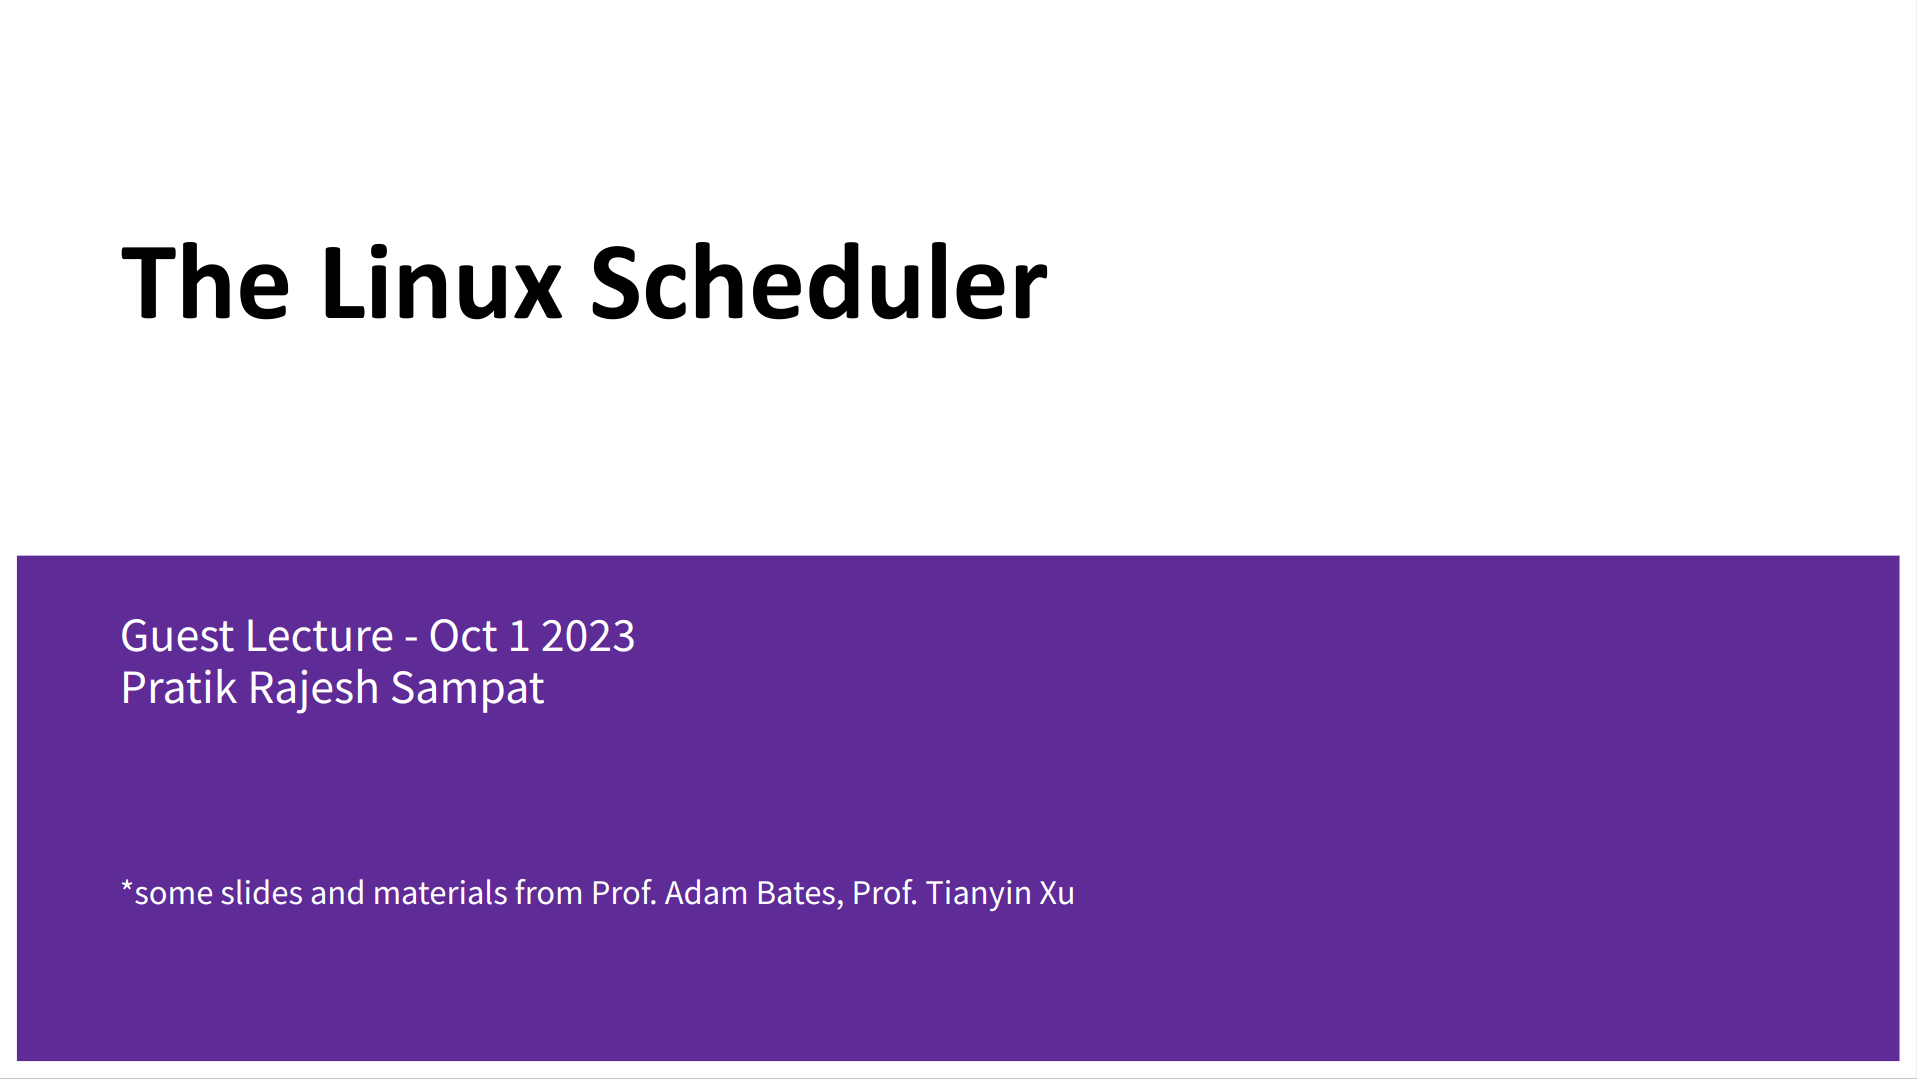 Linux Scheduler Class UIUC